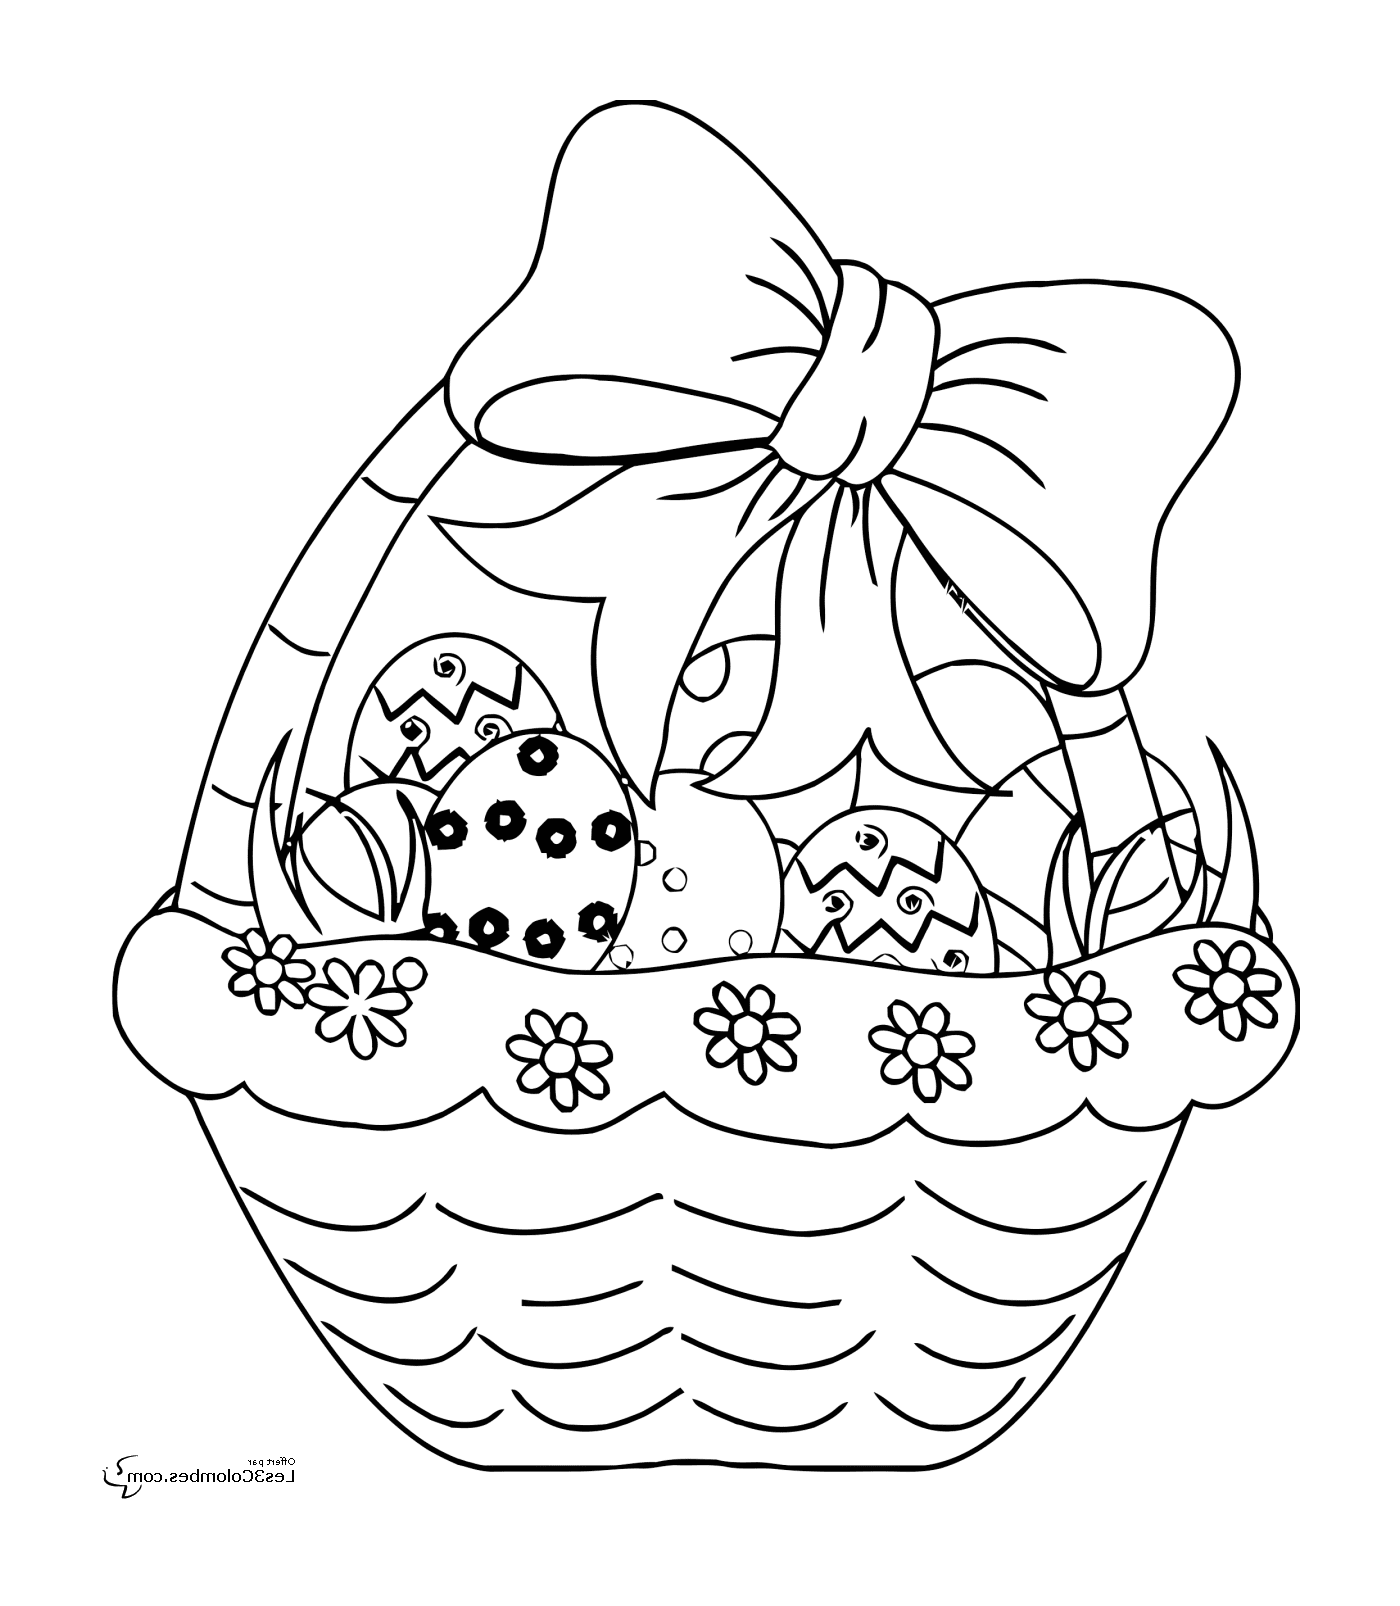  एक टोकरी जो ईस्टर अंडे से भरी हुई है, एक गाँठ से भरी हुई है 